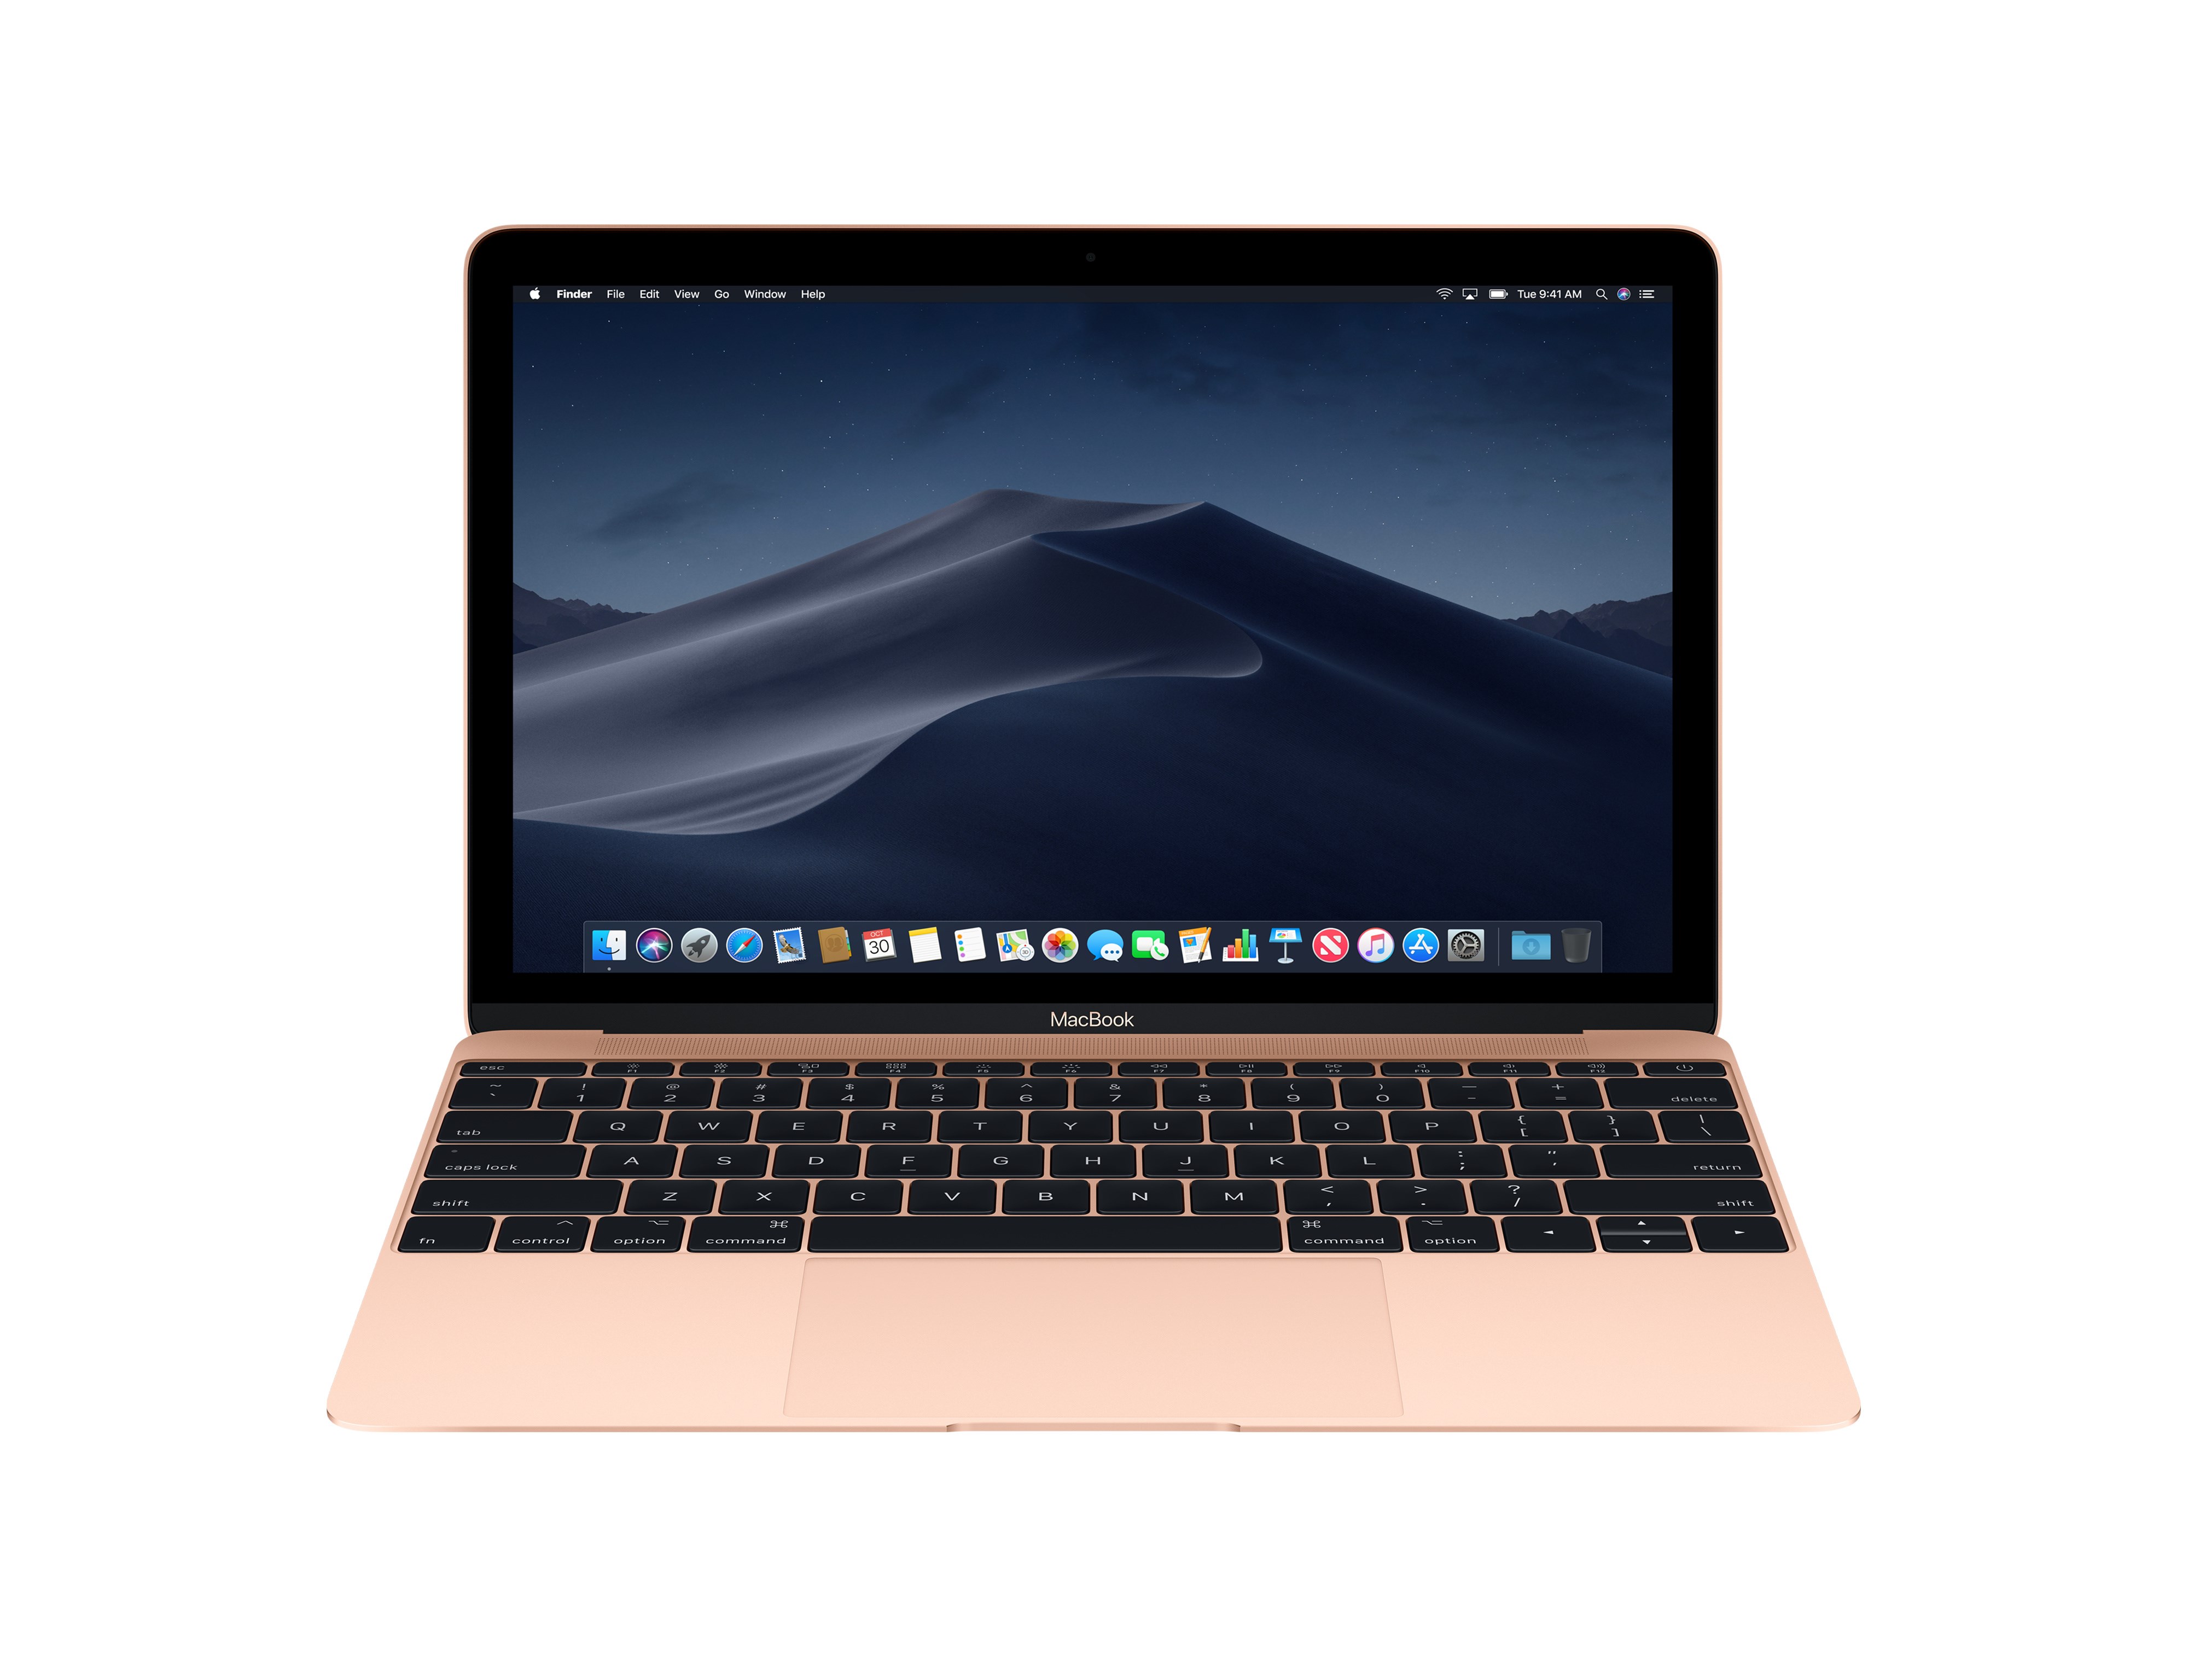 12 inç Macbook yakın zamanda geri dönmeyecek